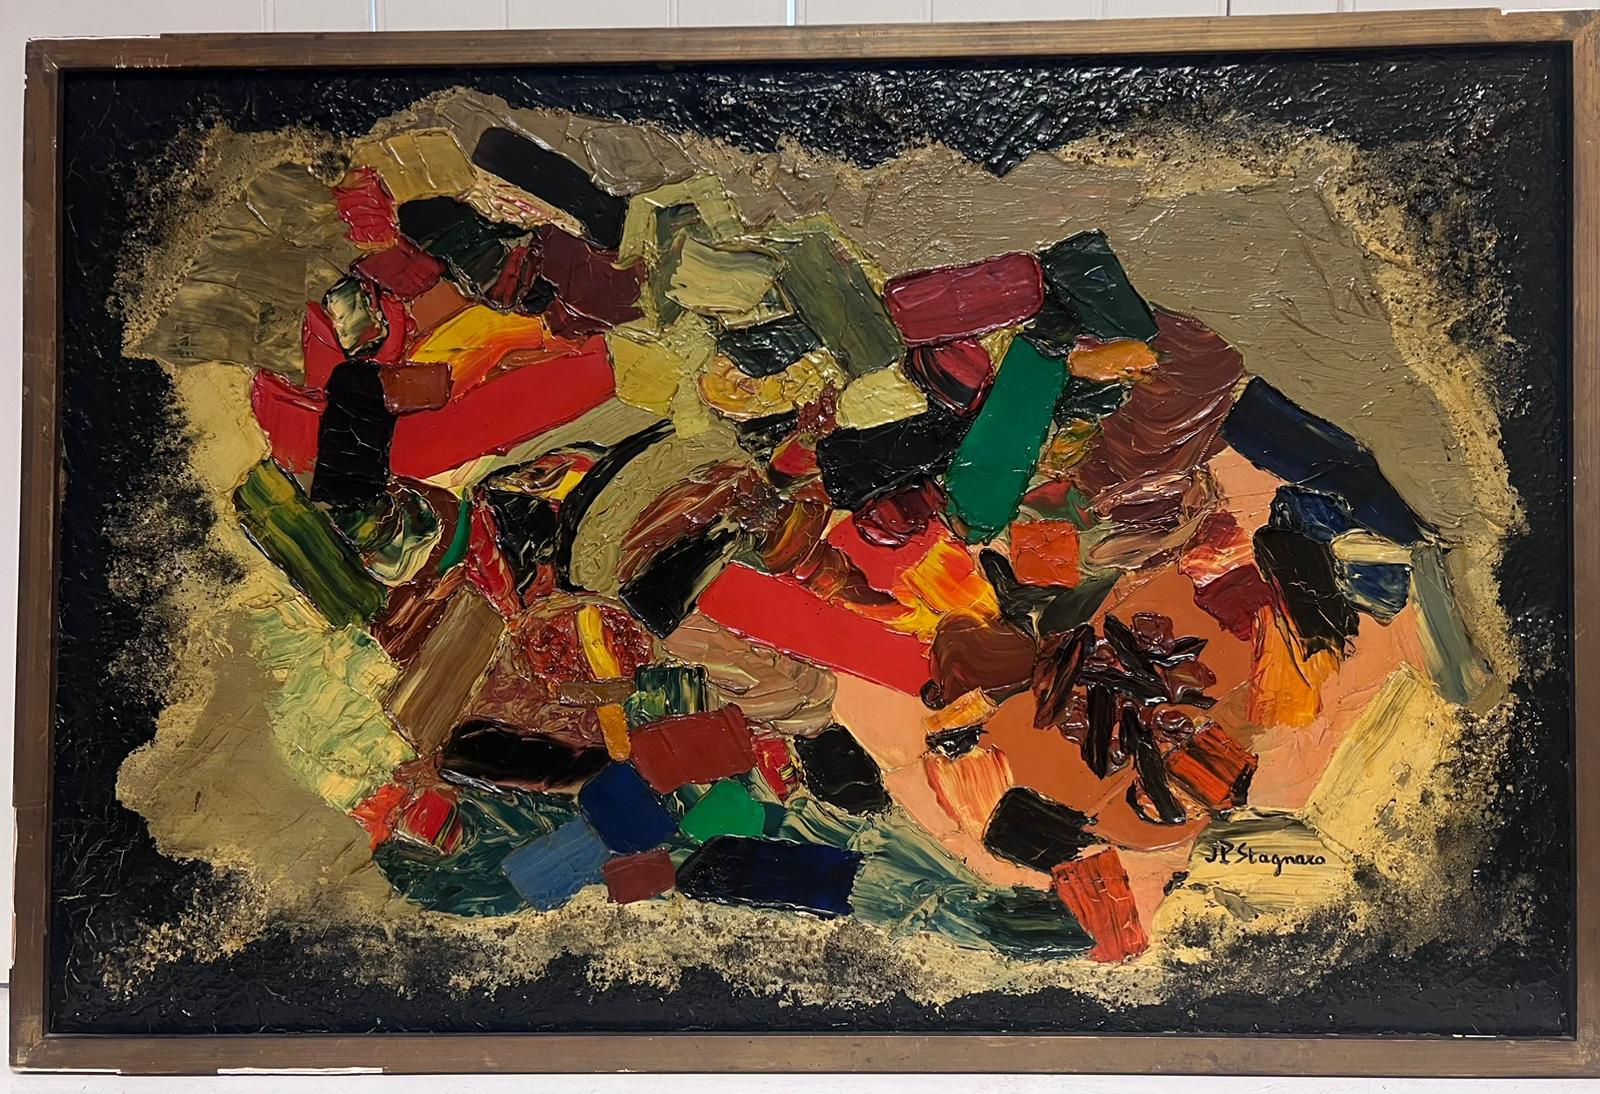 Salade des Fruits
de Jean Pierre Stagnaro (français c. 1961)
composition cubiste d'une nature morte, peinte de façon très épaisse. 
huile sur toile signée, encadrée 
encadré : 25 x 37.5 pouces
toile : 23.5 x 36 pouces
inscrit au verso
provenance :